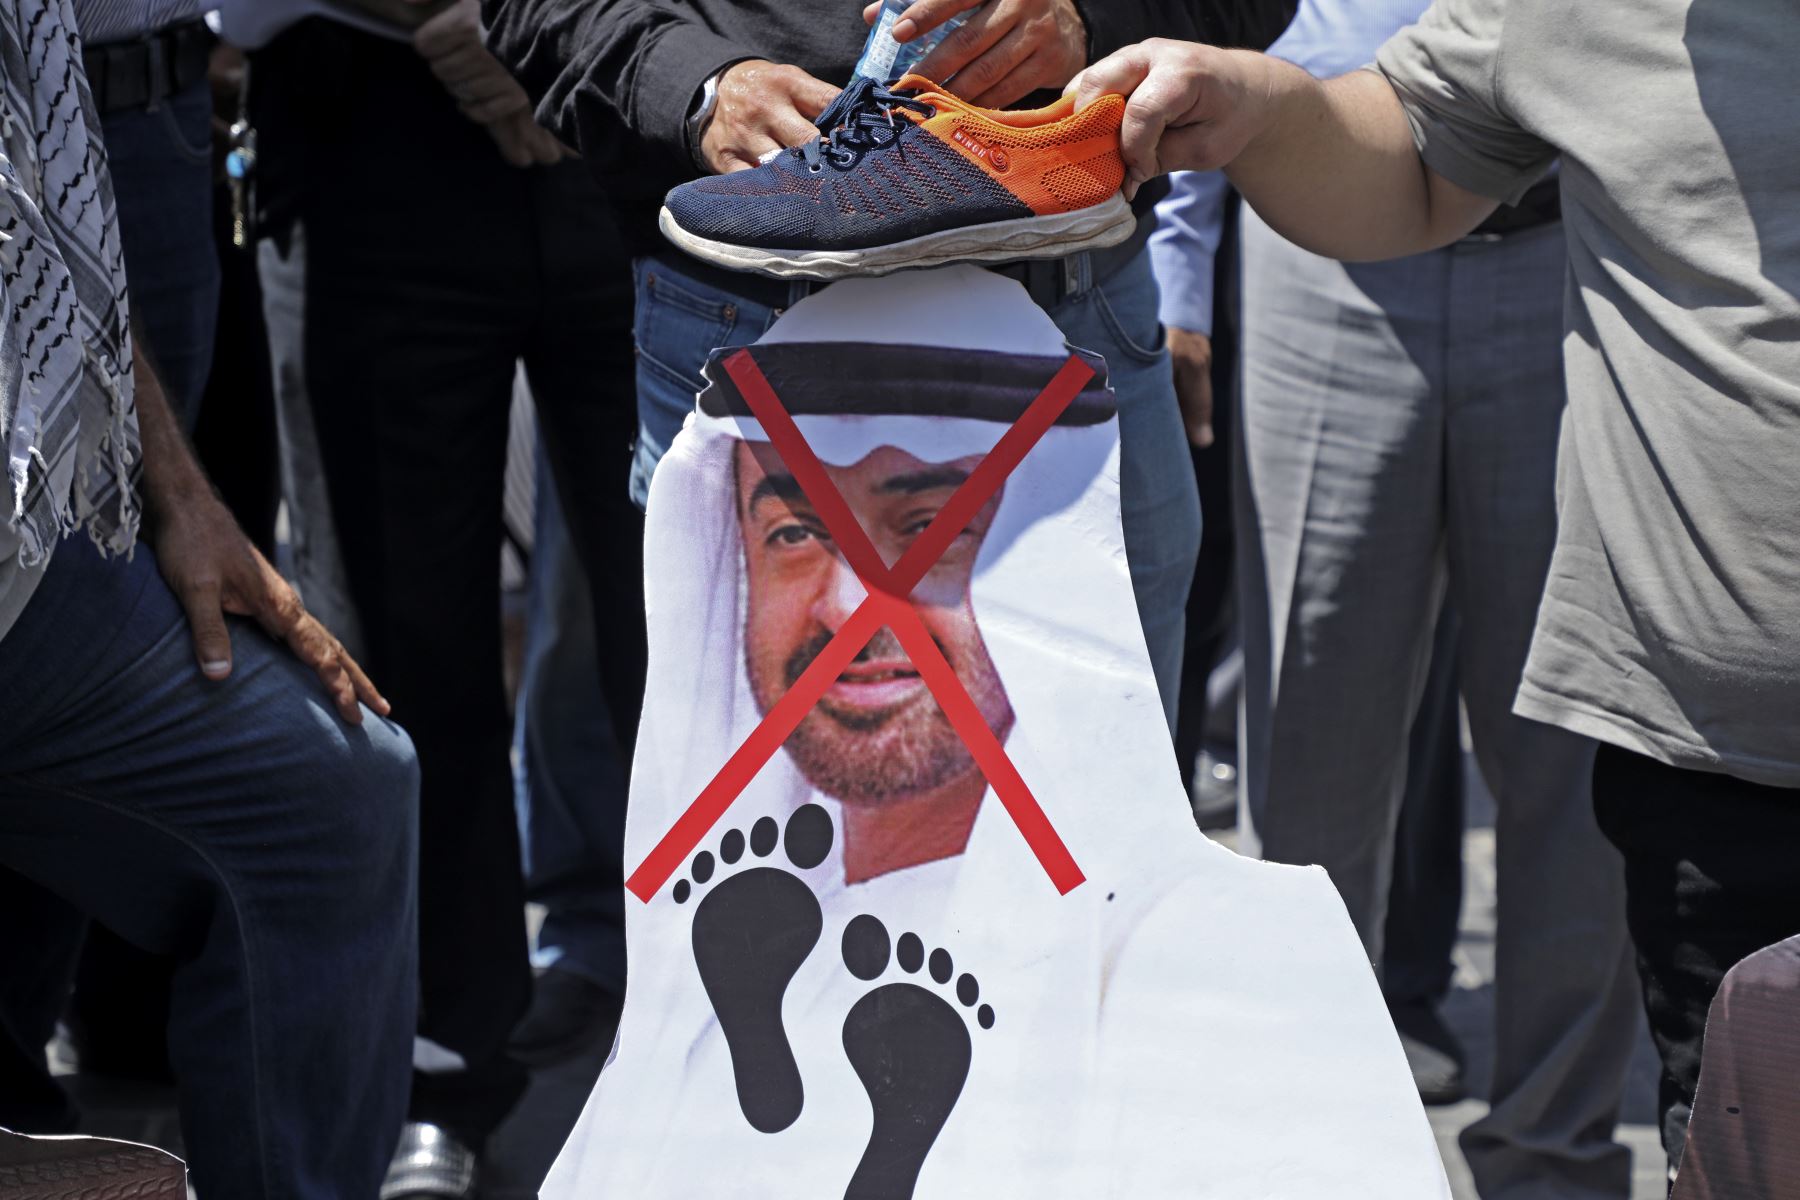 Manifestantes palestinos se preparan para prender fuego a un recorte que muestra el rostro del príncipe heredero de Abu Dhabi, el jeque Mohammed bin Zayed al-Nahyan, durante una manifestación en Naplusa en la ocupada Cisjordania, contra un acuerdo negociado por Estados Unidos entre Israel y los Emiratos Árabes Unidos. Foto: AFP